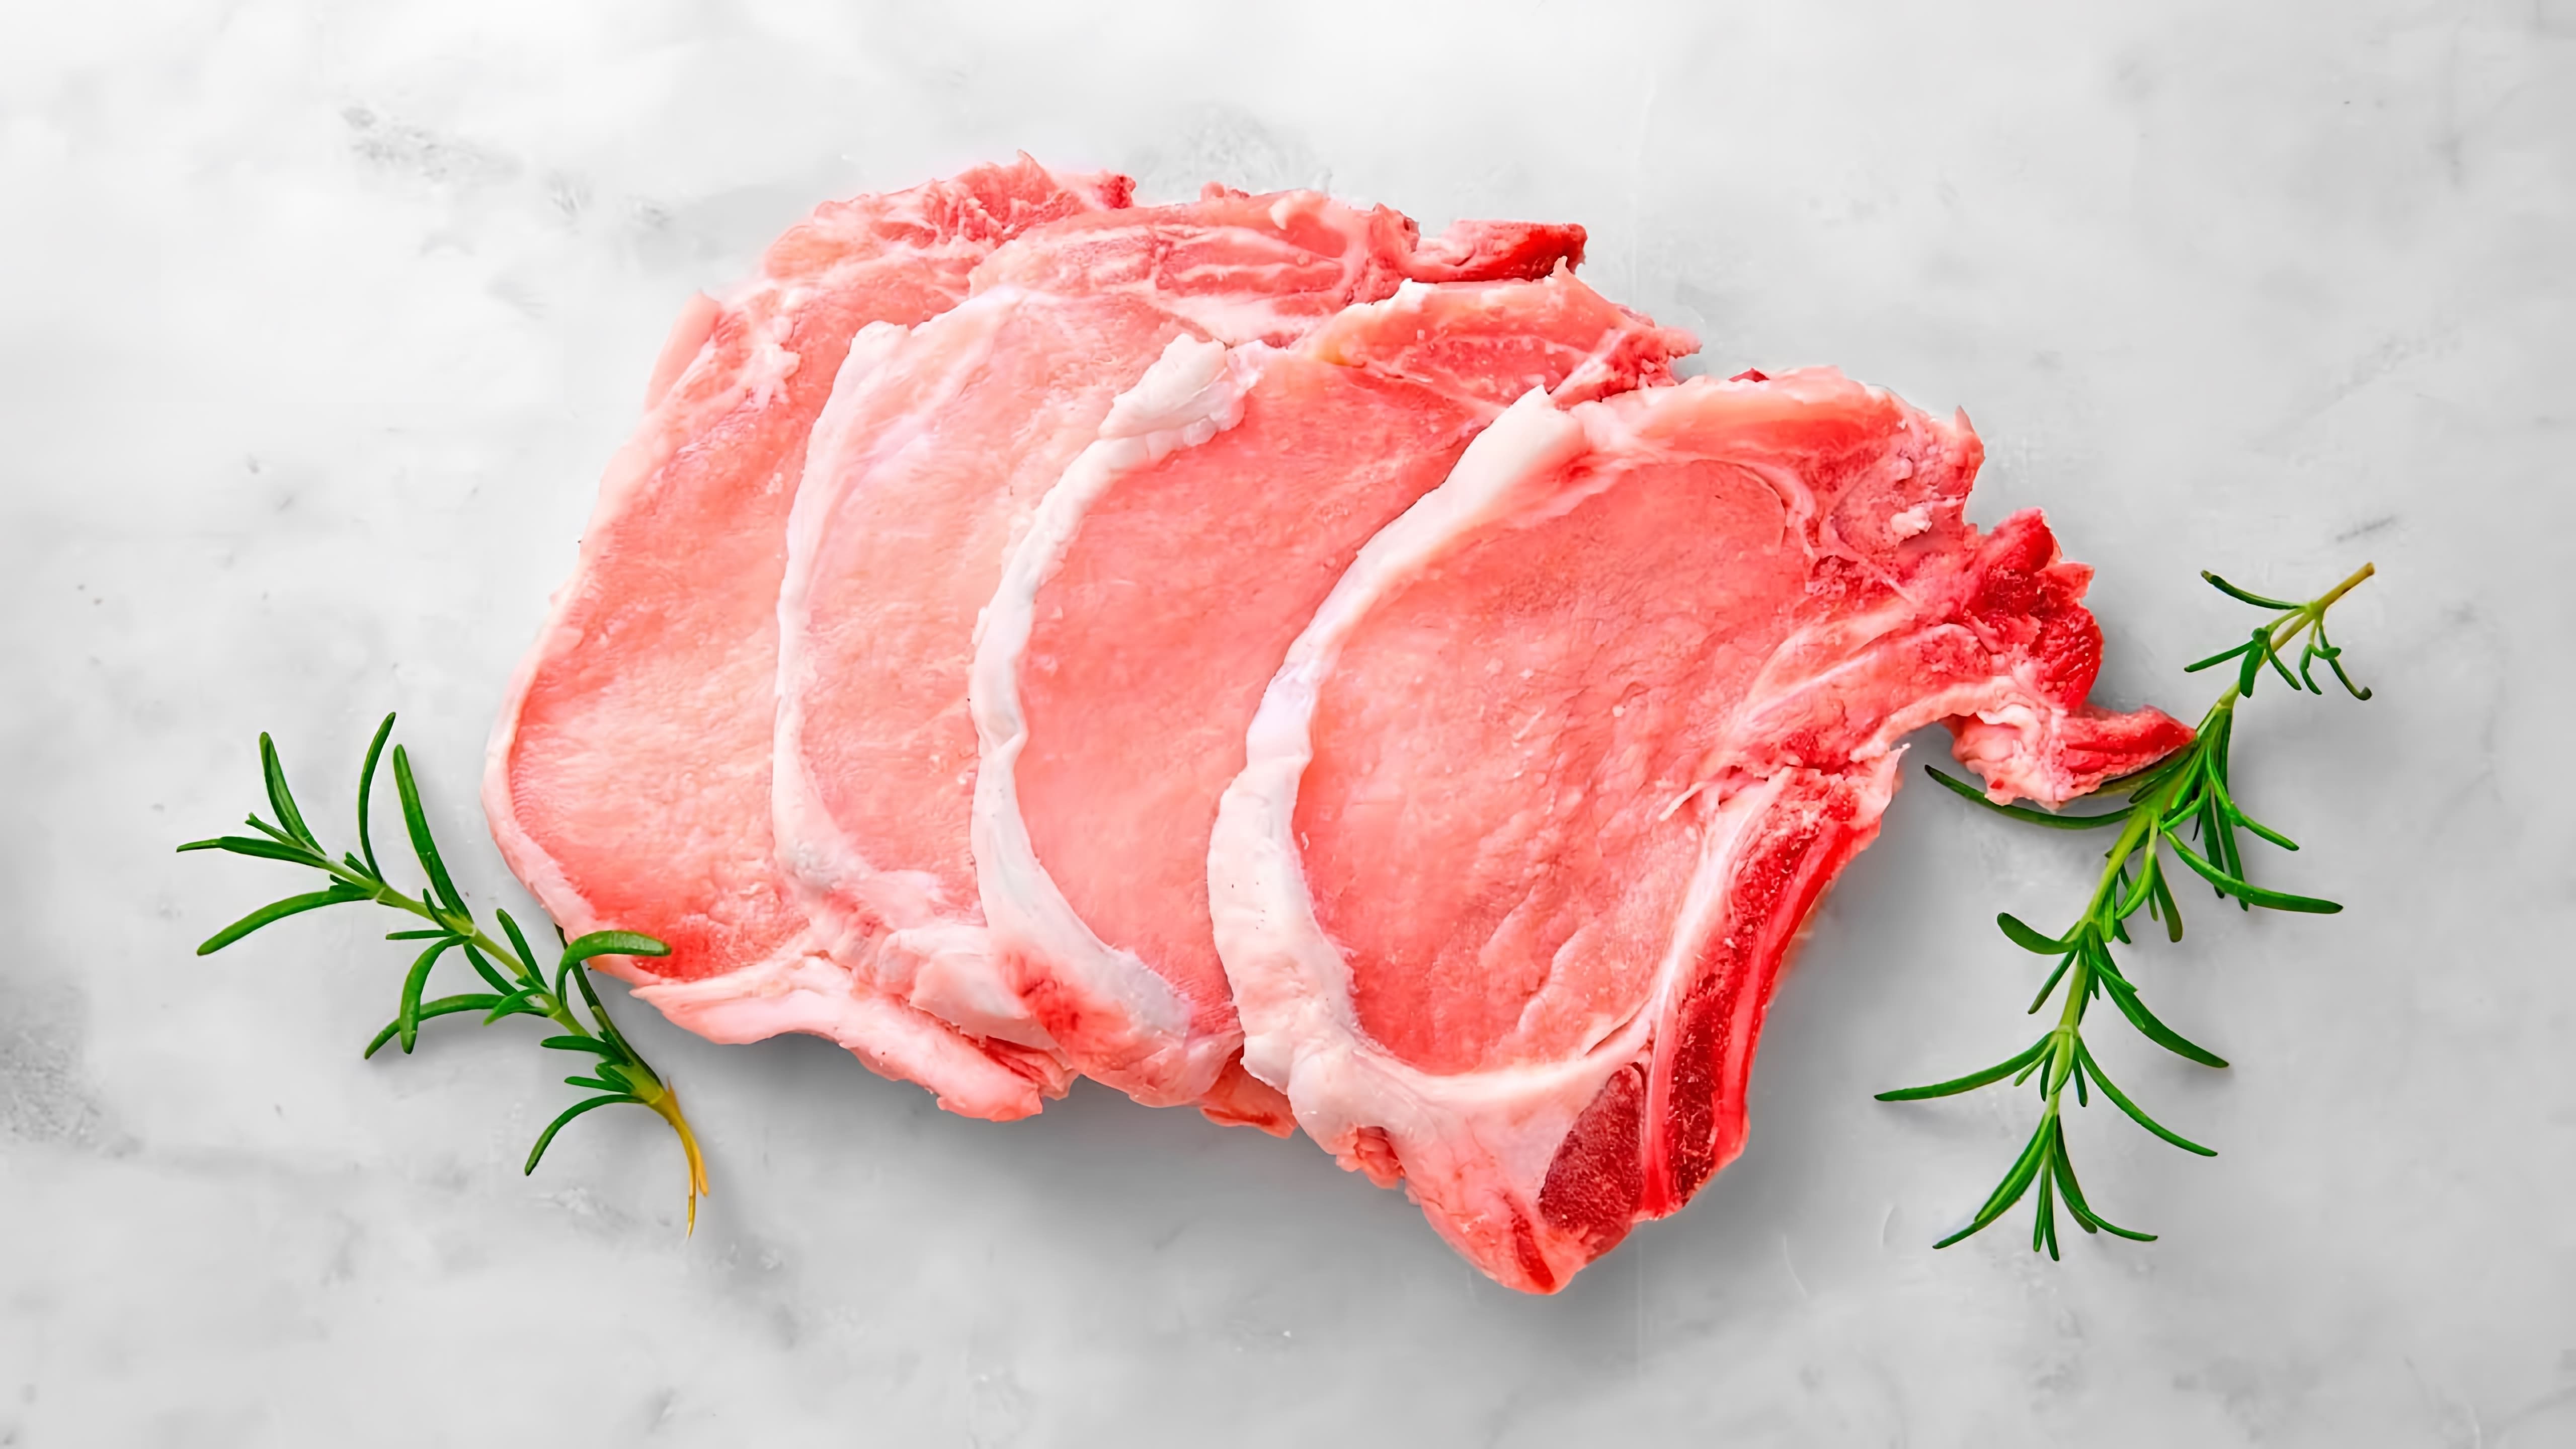 В данном видео представлены рецепты четырех блюд из свинины: Оджахури, Мясо по-французски, Свиные ребра и Свинина в красном соусе